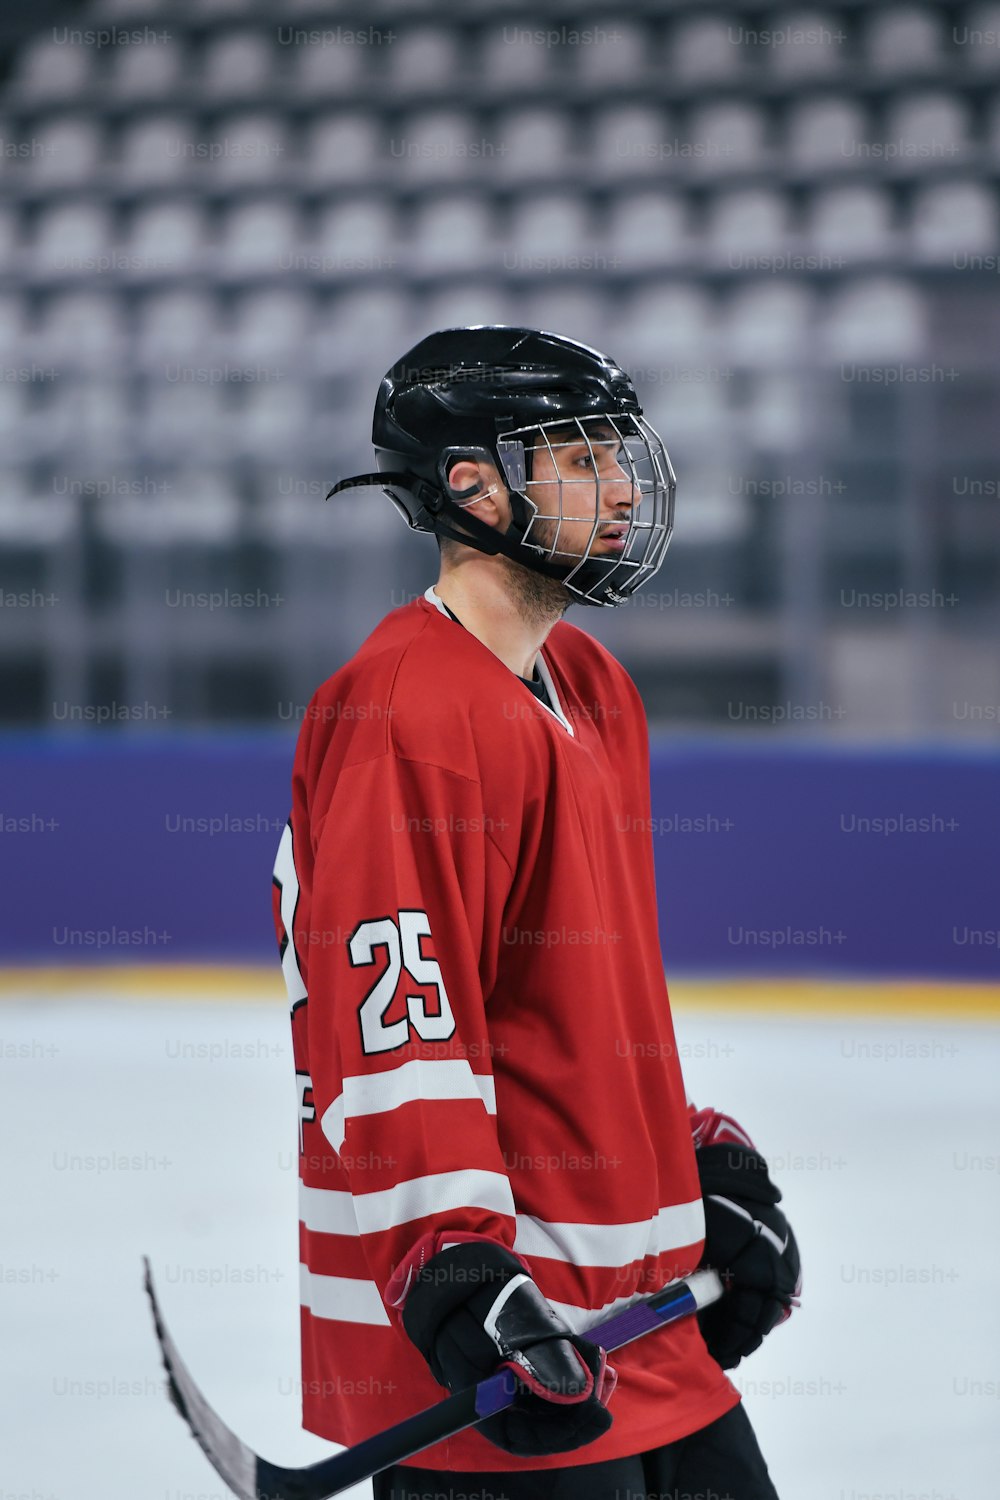 Ein Mann im roten Trikot hält einen Hockeyschläger in der Hand